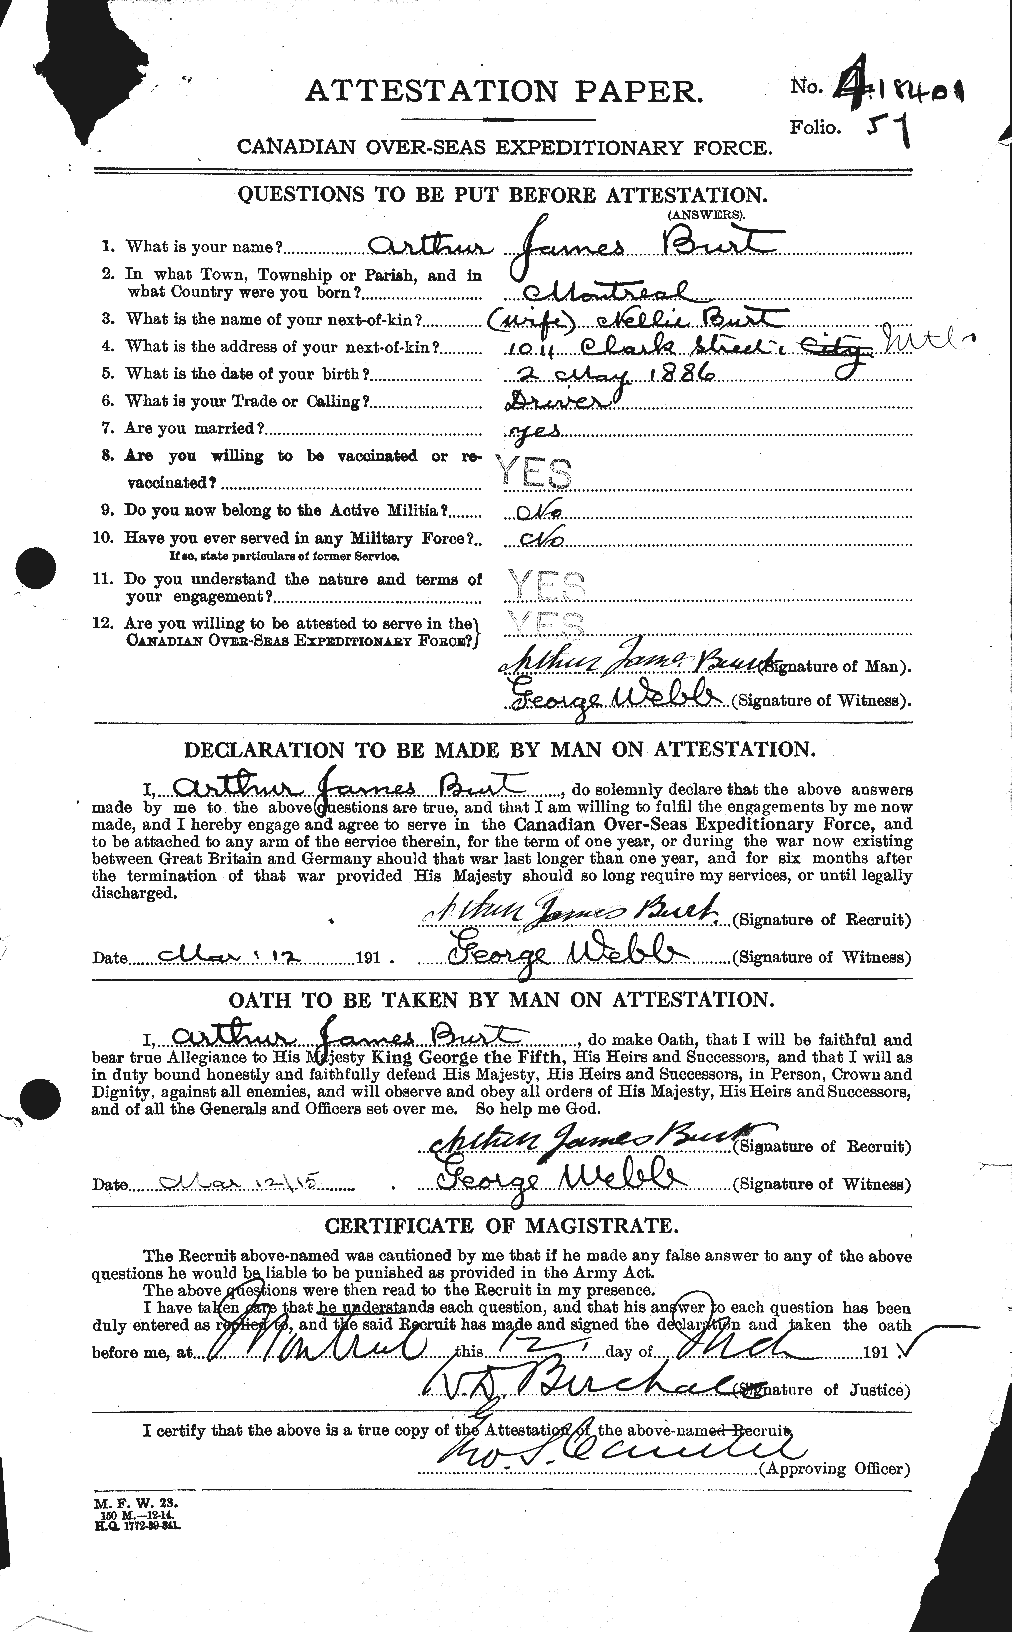 Dossiers du Personnel de la Première Guerre mondiale - CEC 274975a